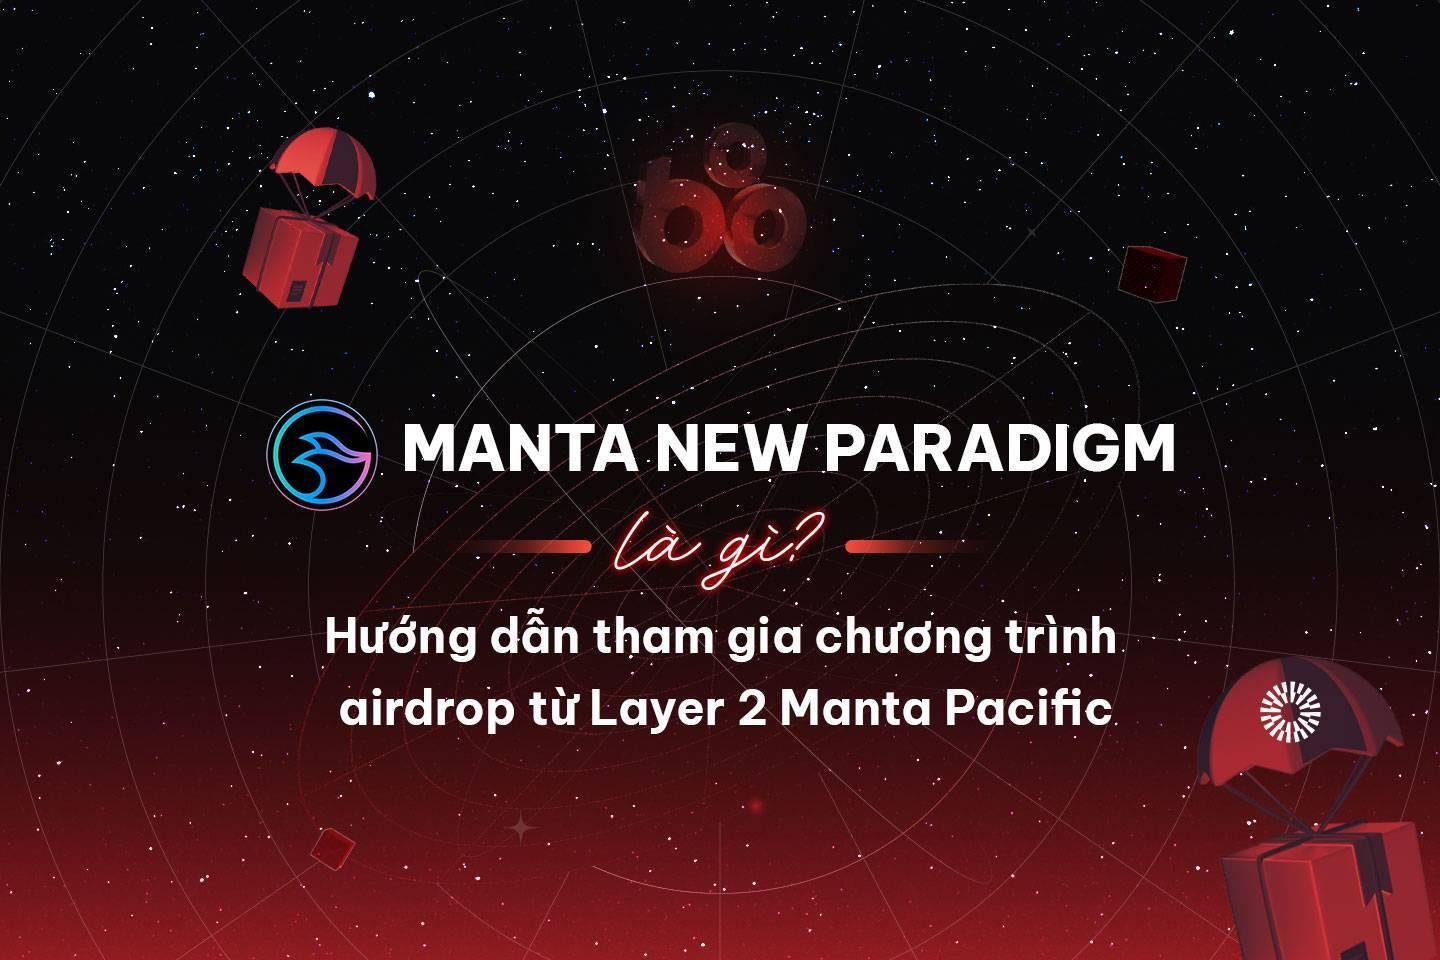 manta-new-paradigm-la-gi-huong-dan-tham-gia-chuong-trinh-airdrop-tu-layer-2-manta-pacific